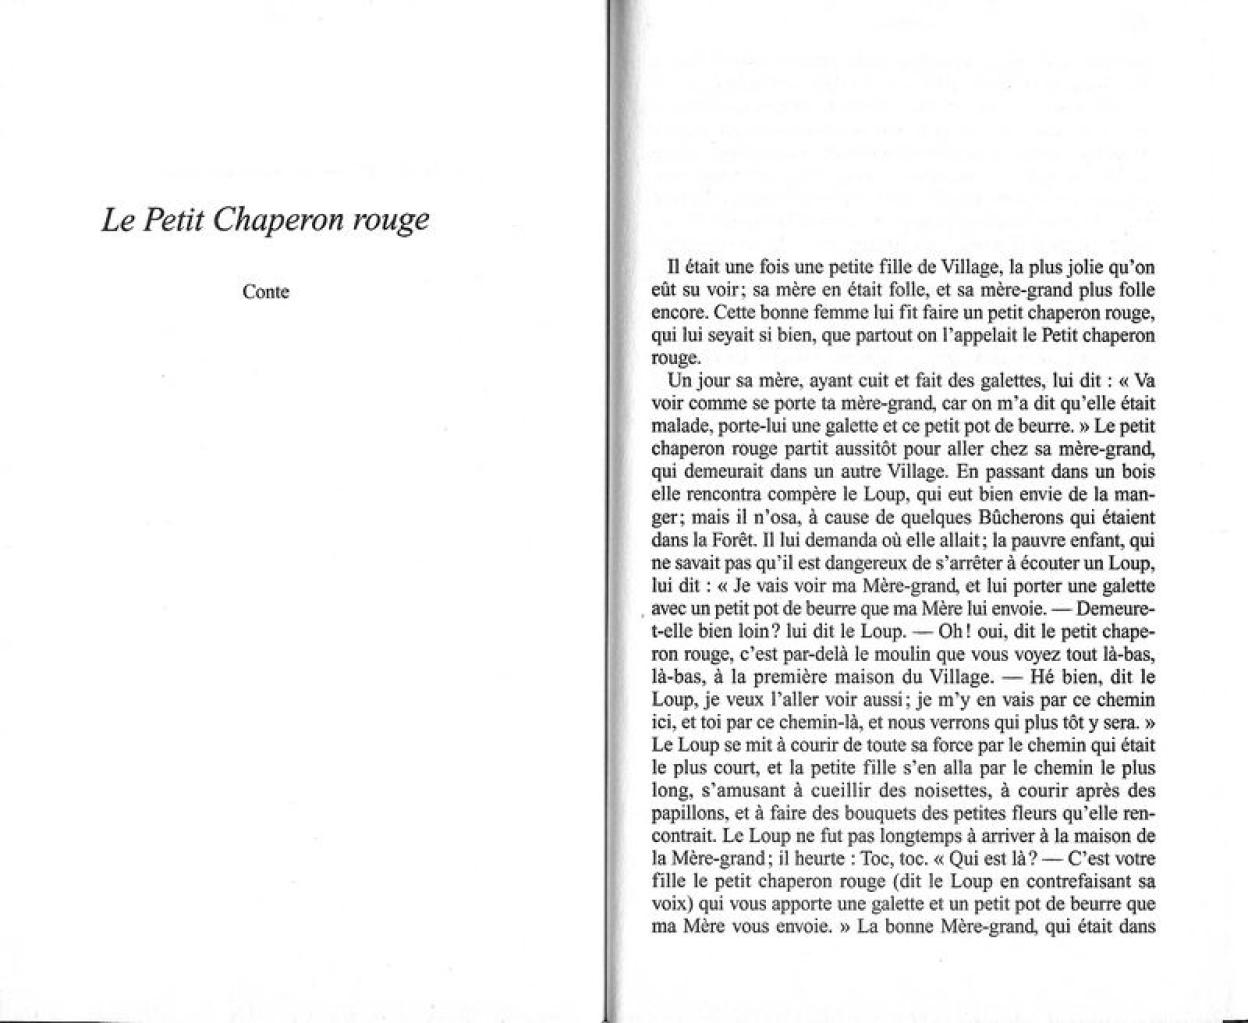 Elvifrance - Contes satyriques - 018 - Les mésaventures du Chaperon Rouge numero d'image 117